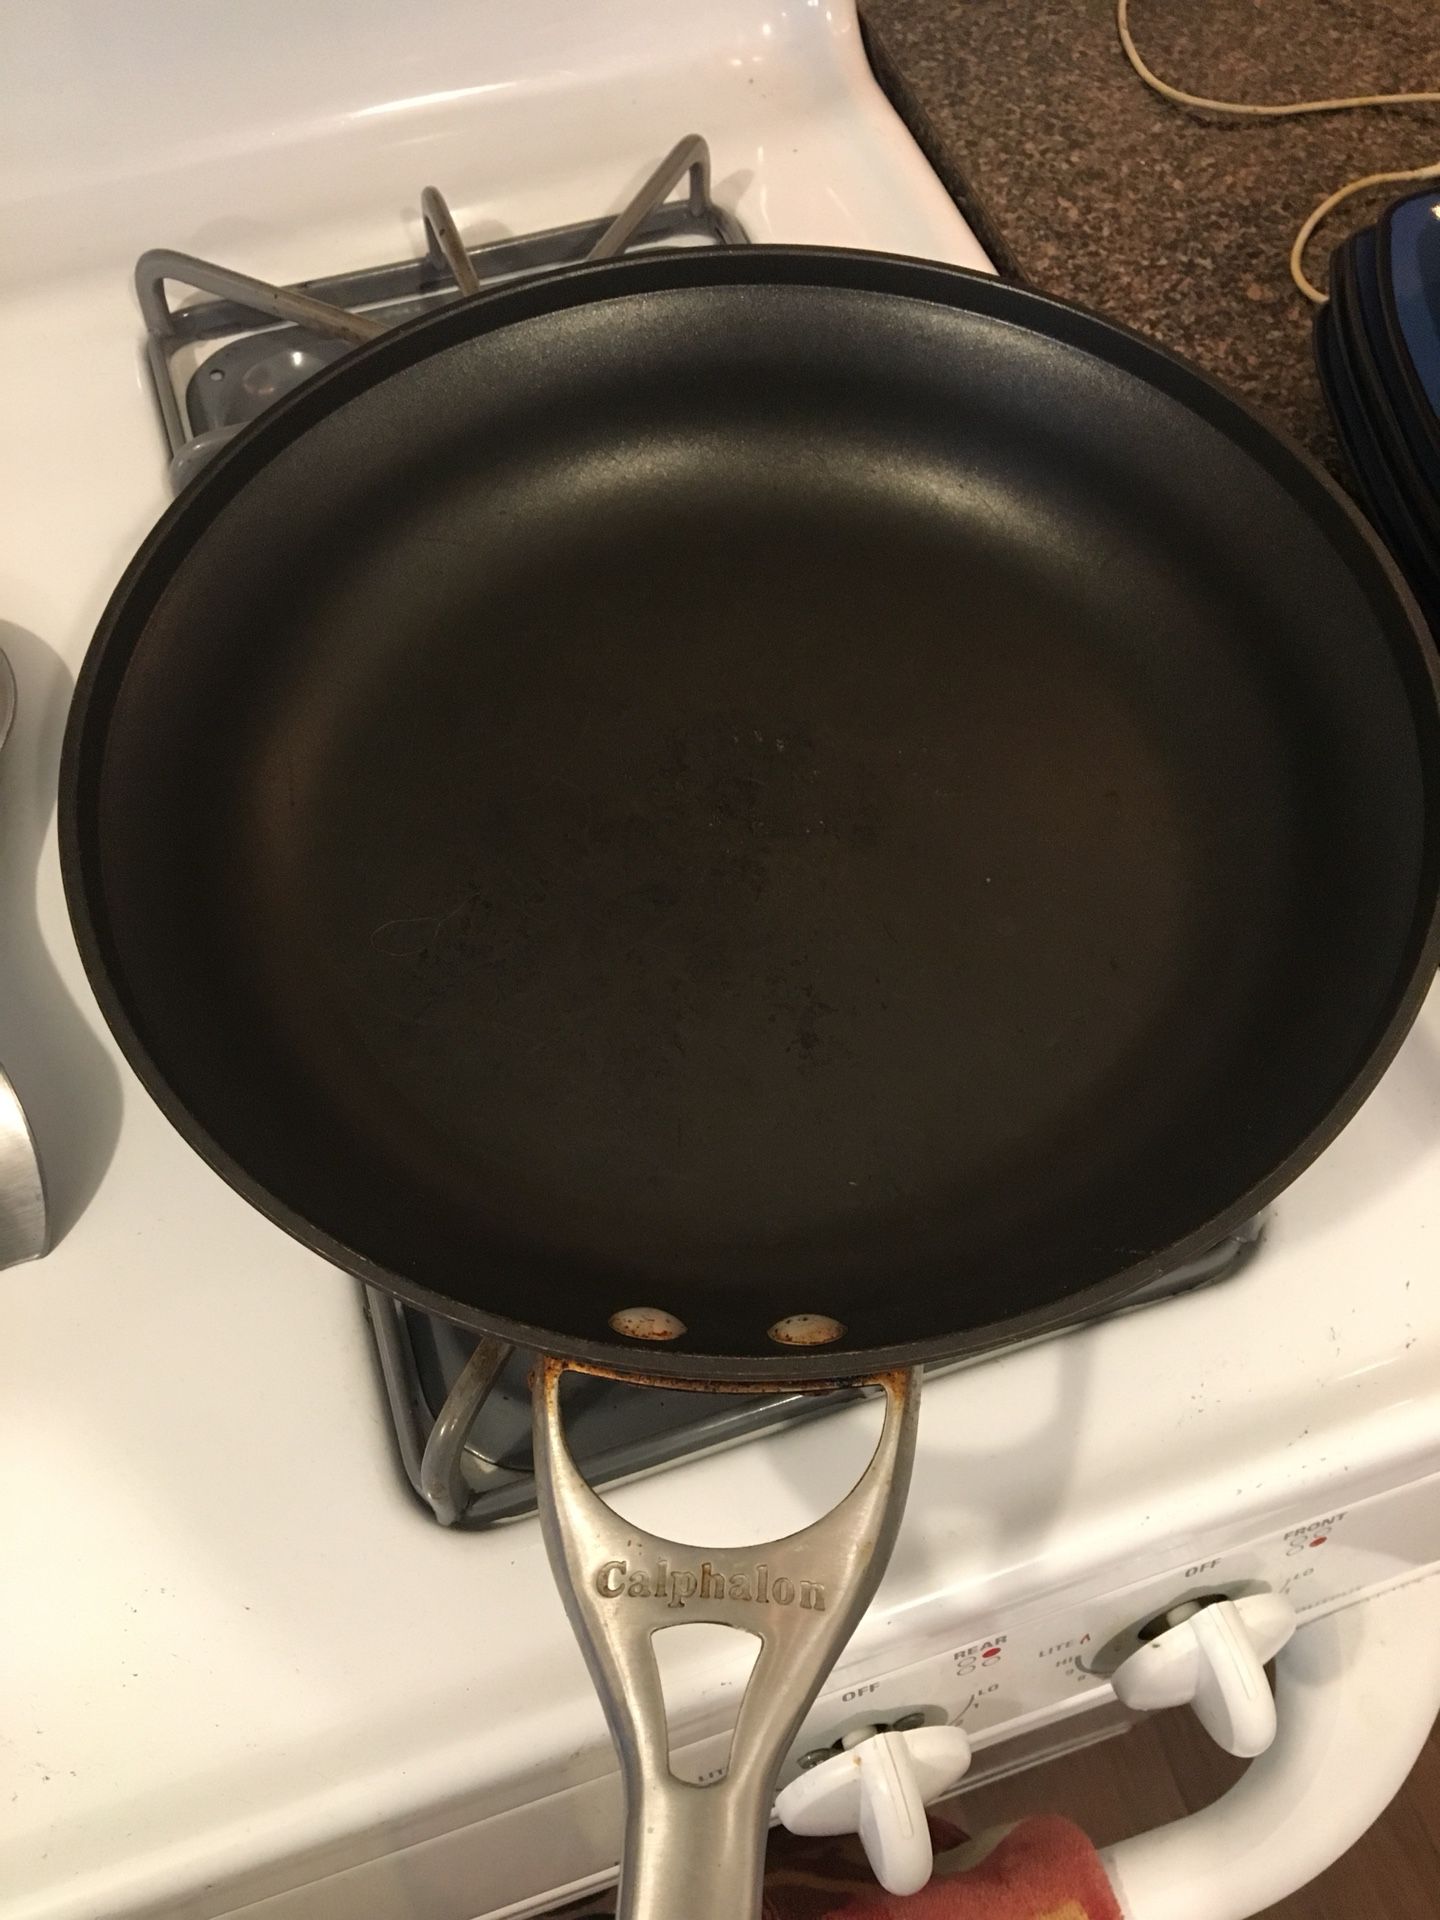 Calphalon pan